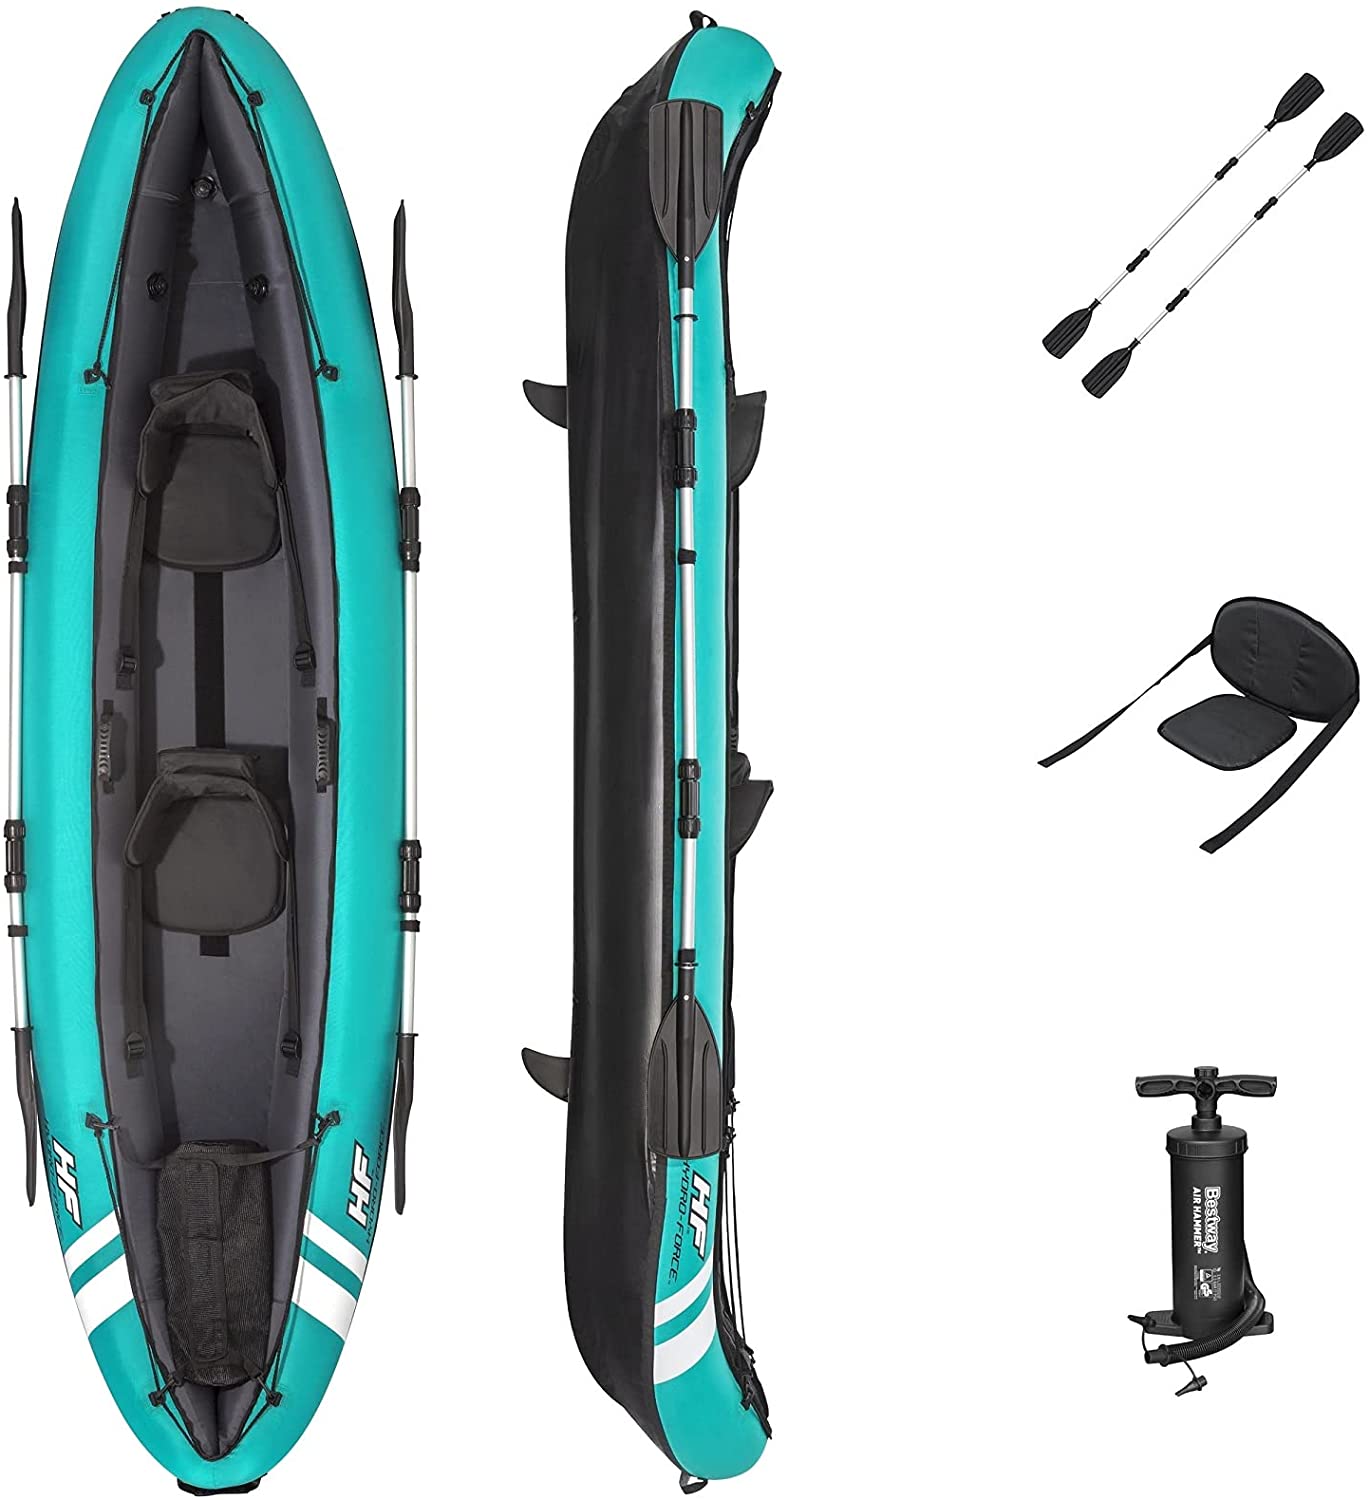 
                                    
                                Caone e kayak gonfiabili, le migliori per il mare, il fiume e la pesca